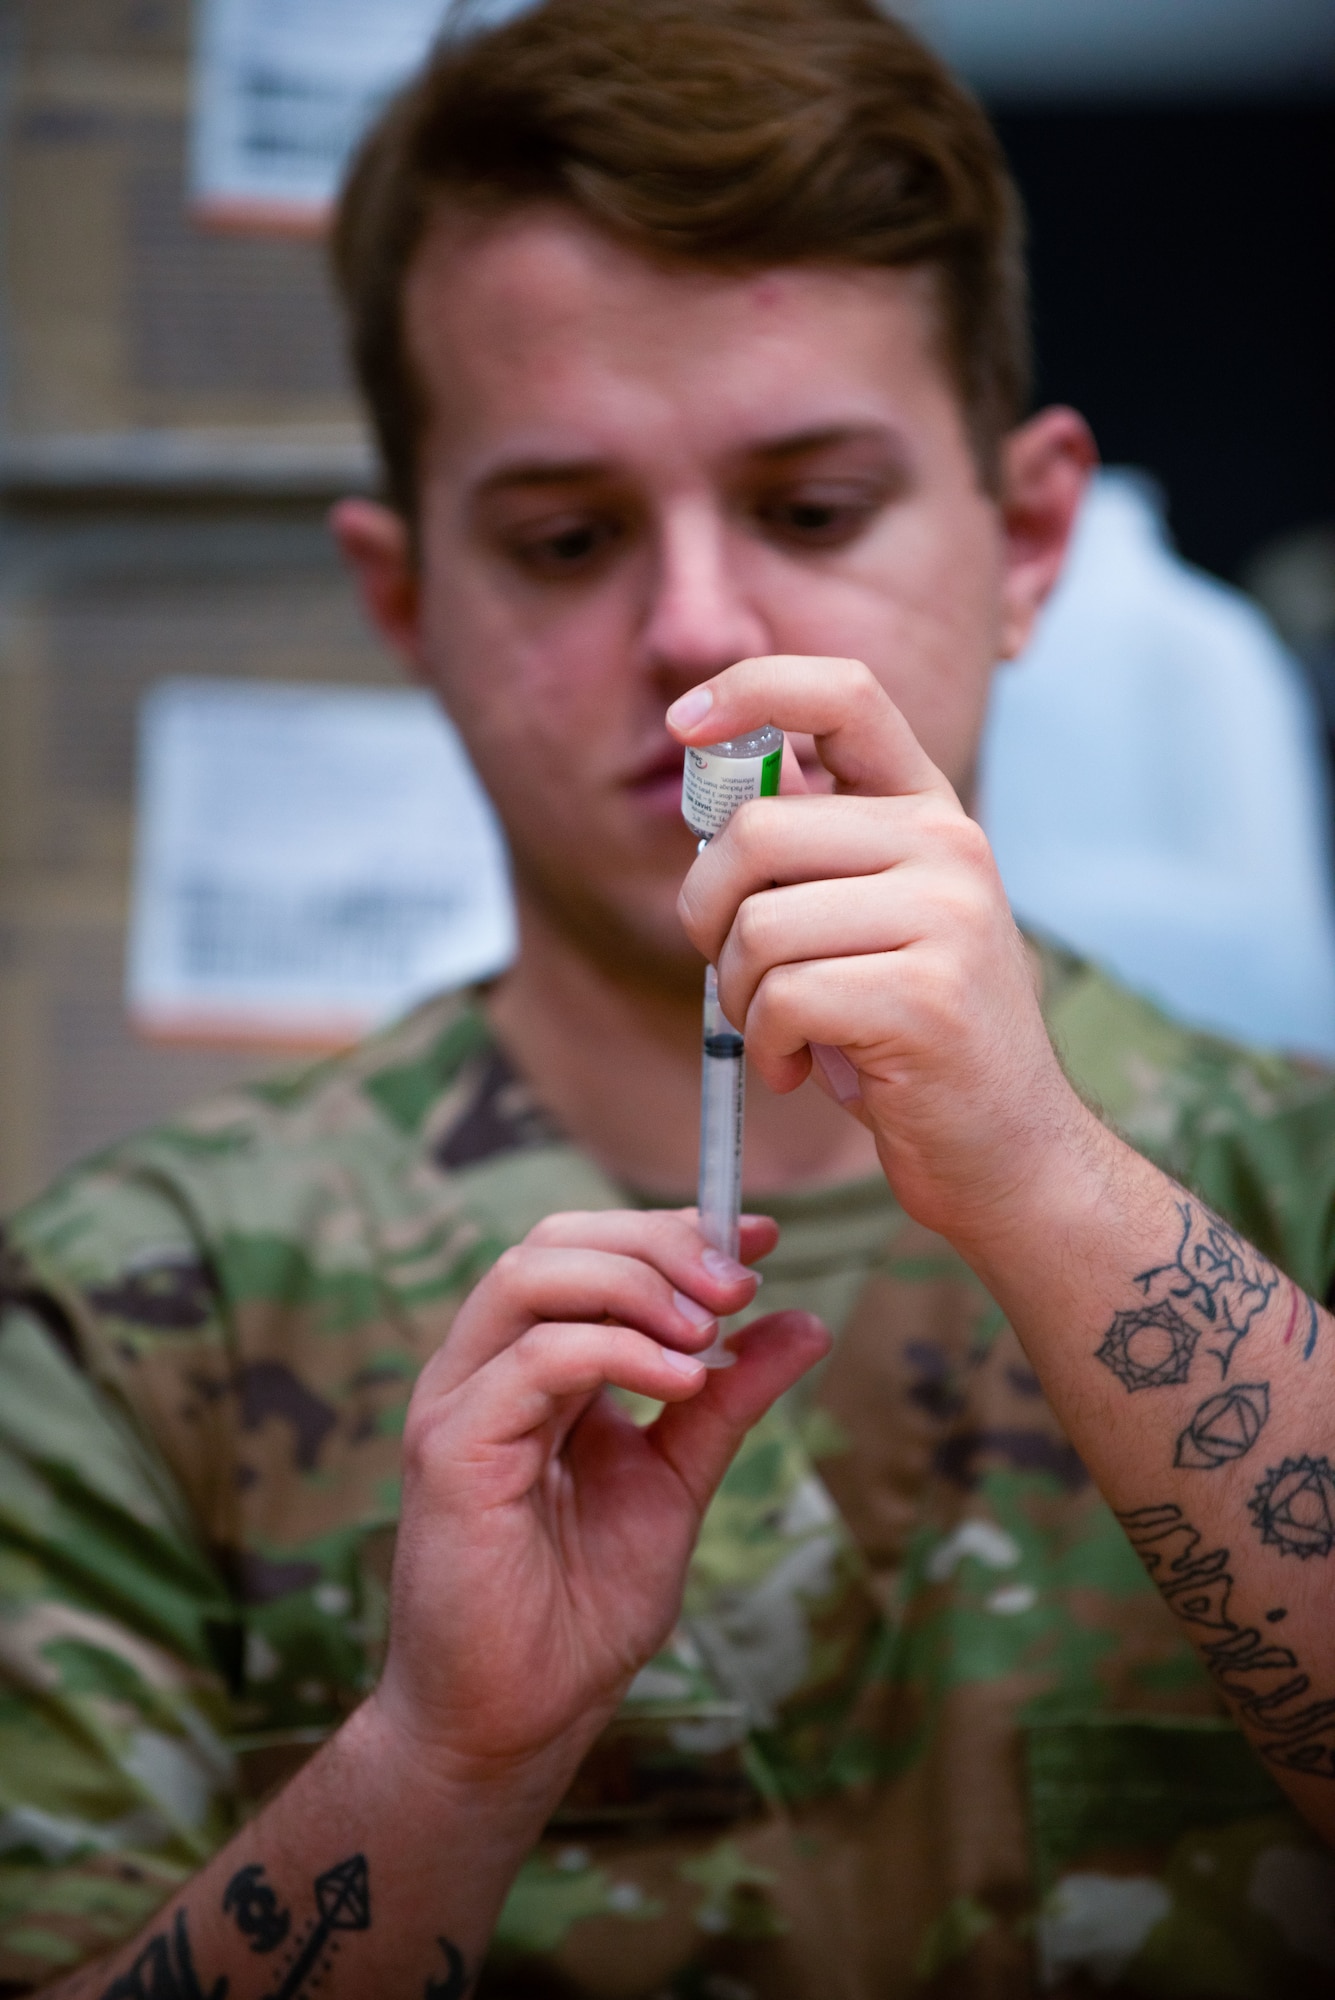 An Airman prepares a vaccine